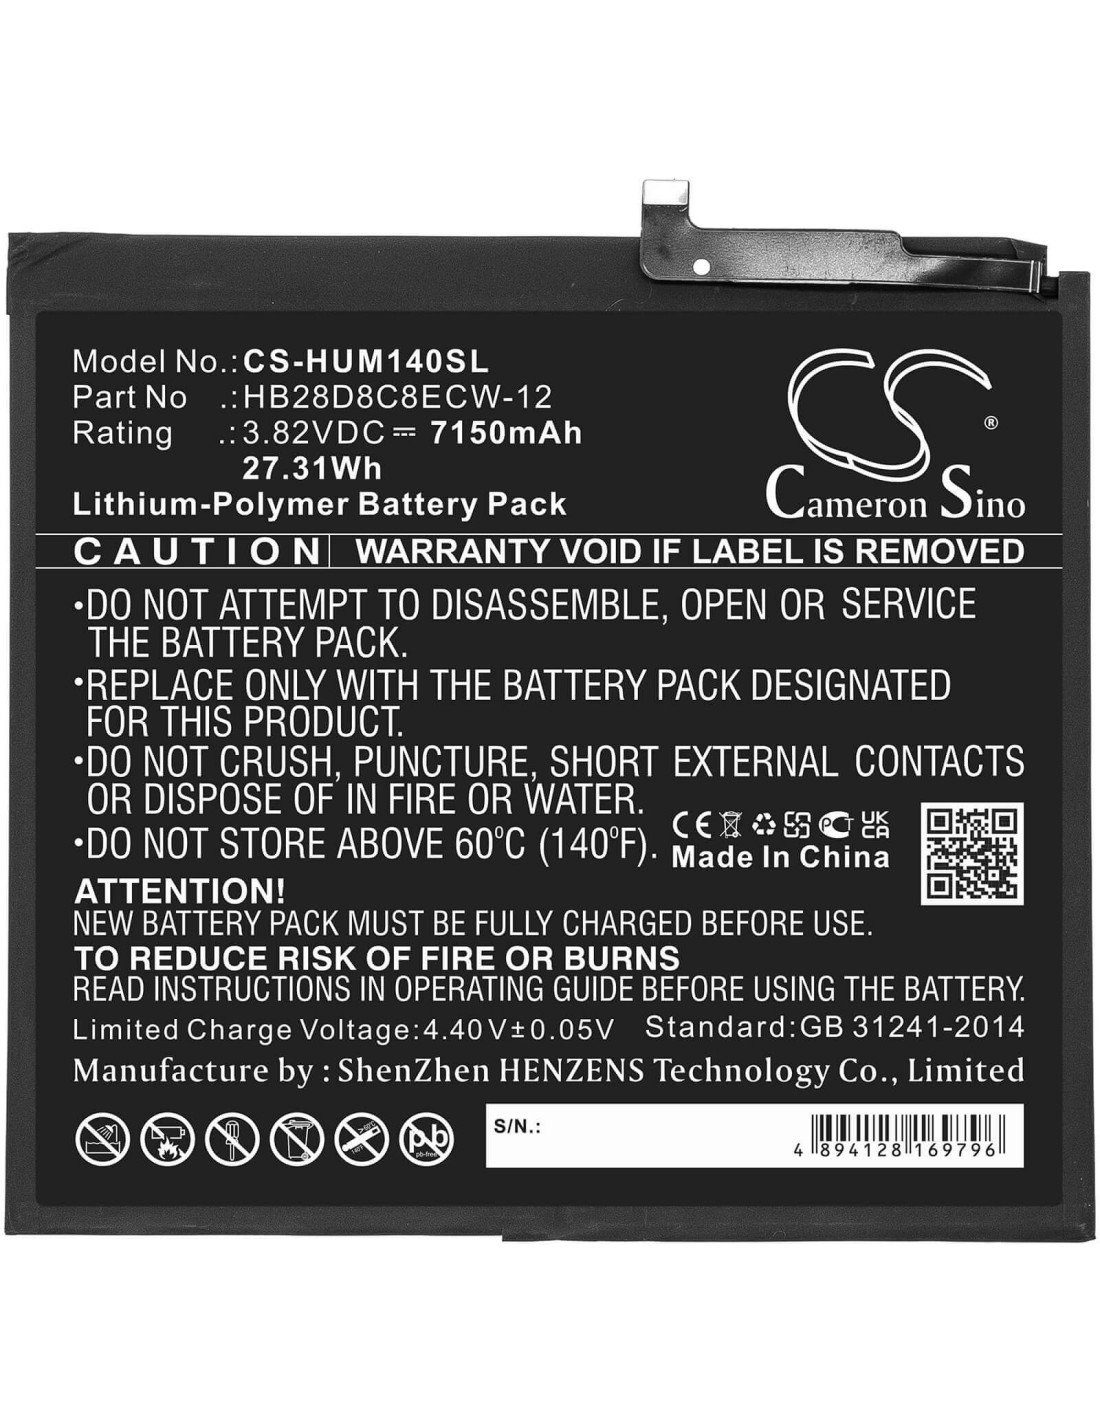 Battery for Huawei, Bah3-al00, Bah3-l09, Bah3-w09 3.82V, 7150mAh - 27.31Wh